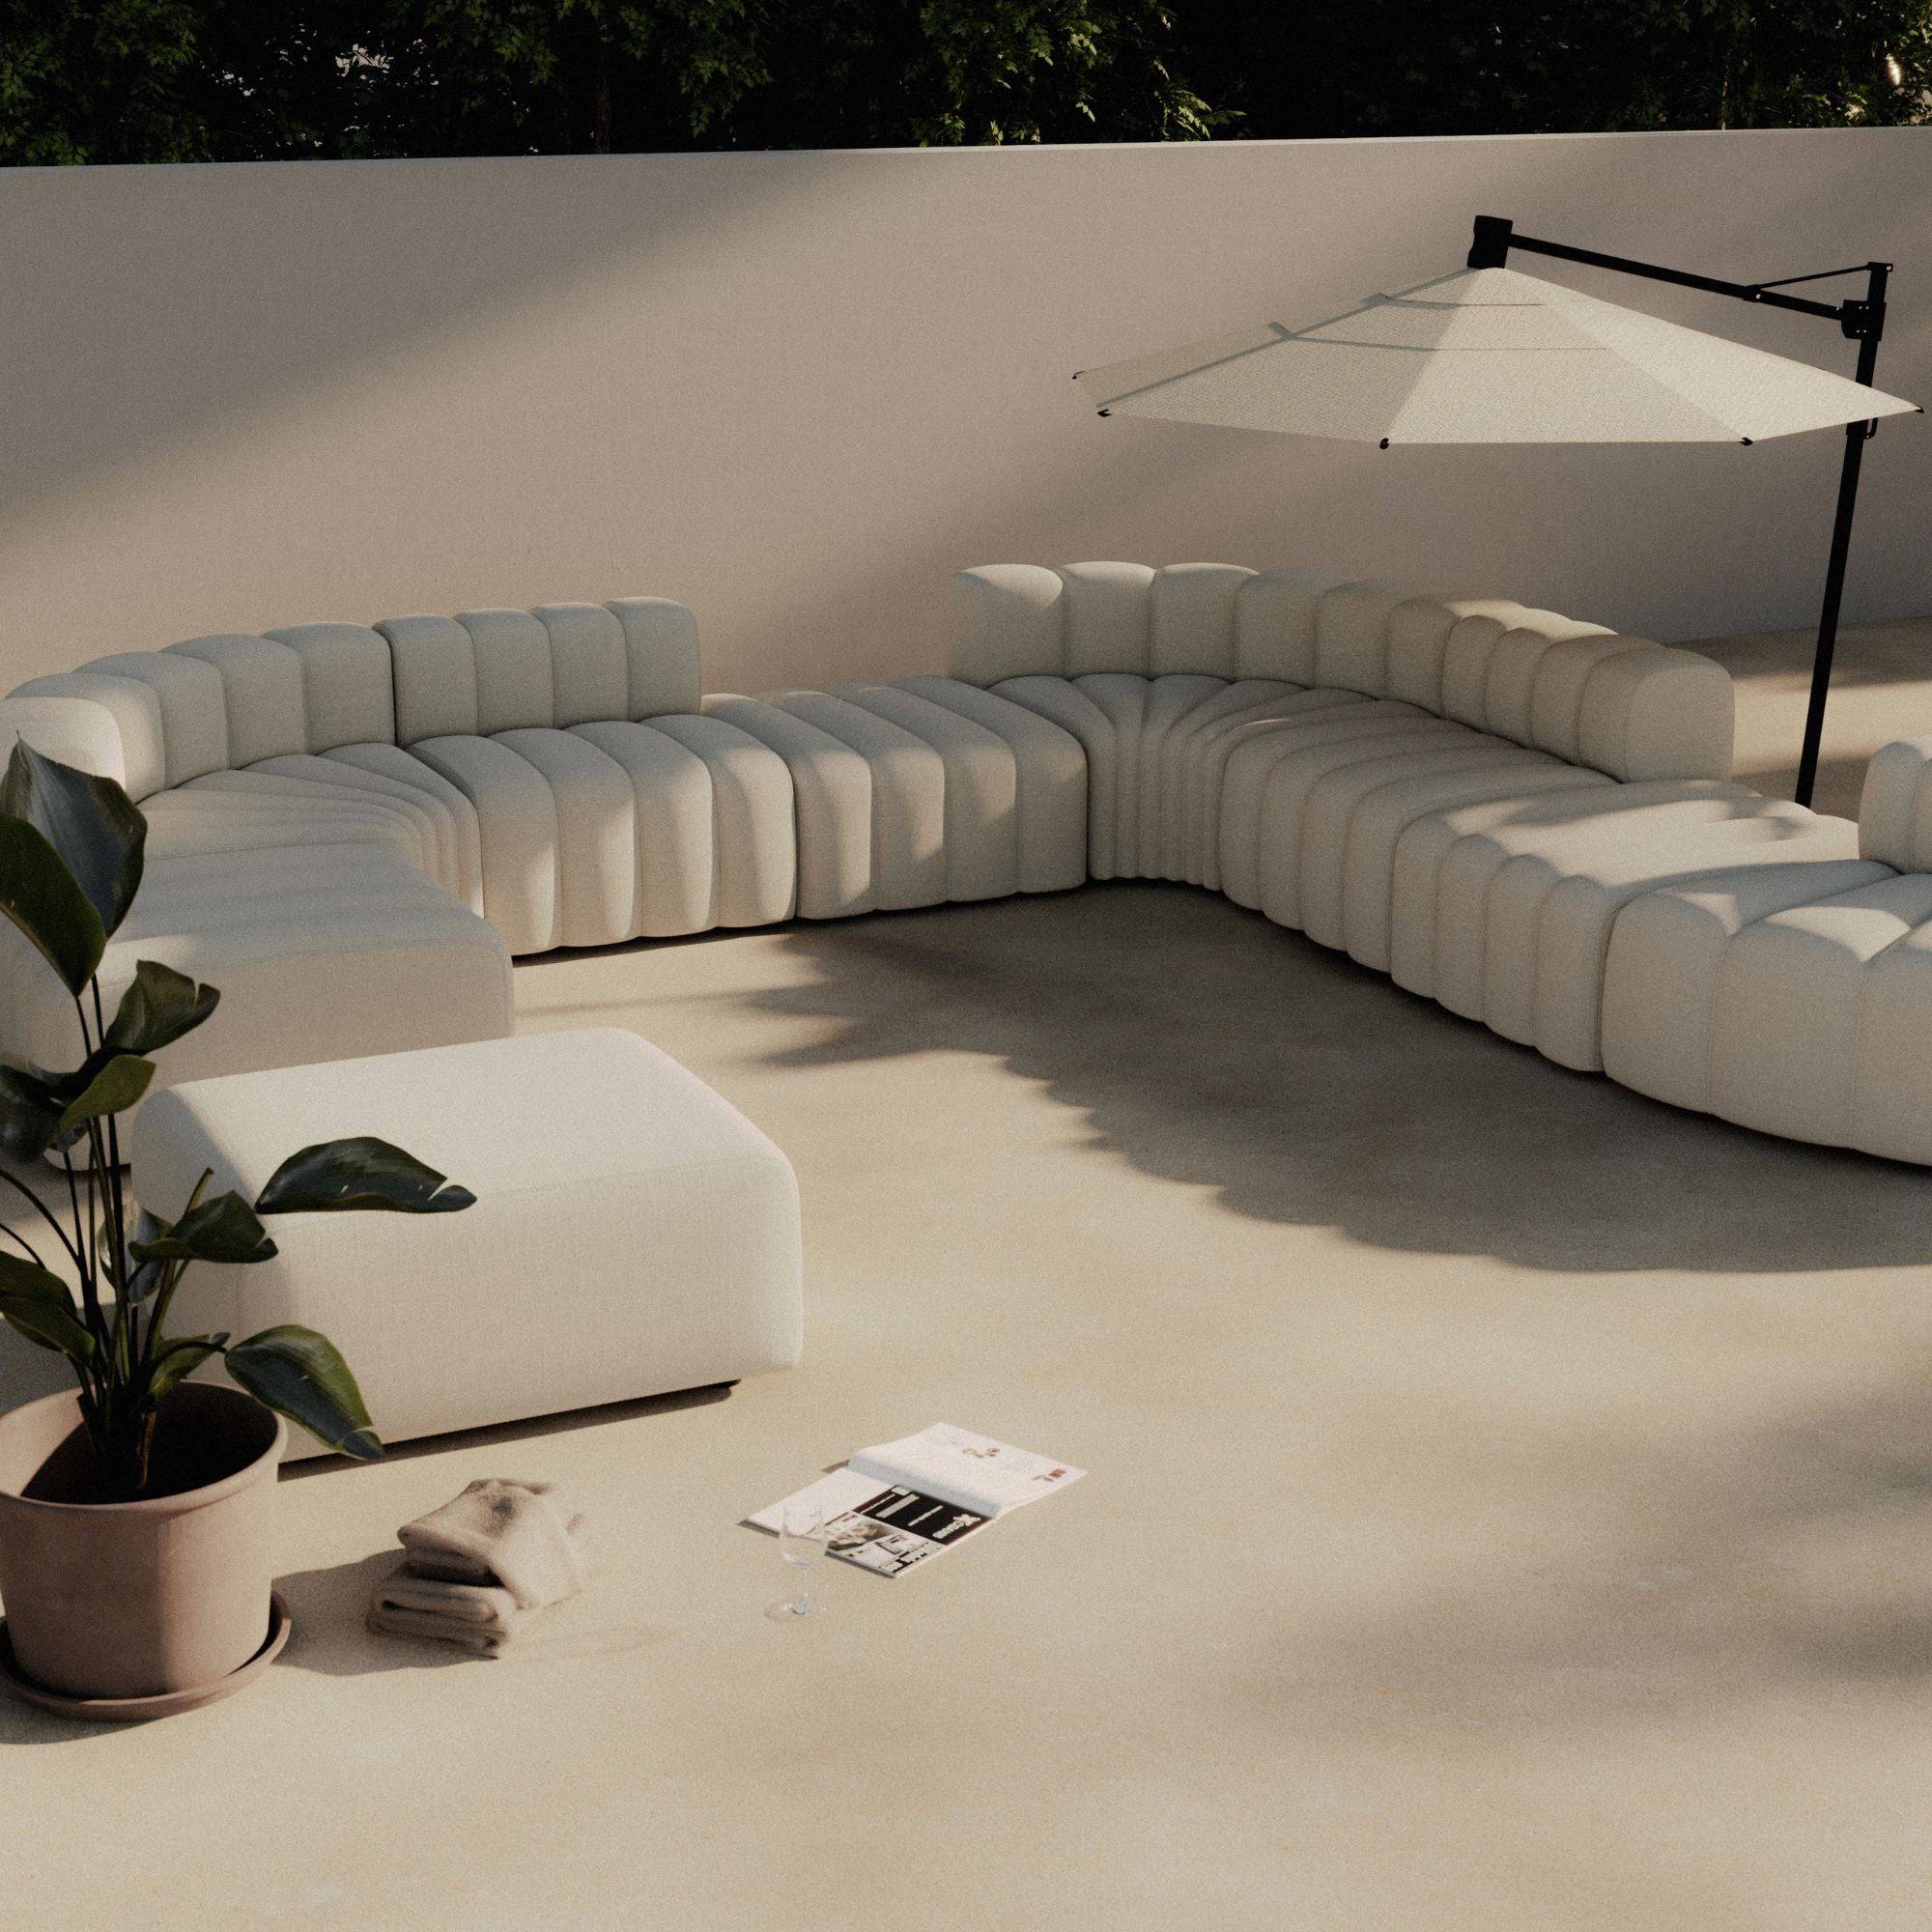 Outdoor Studio 4 Sofa